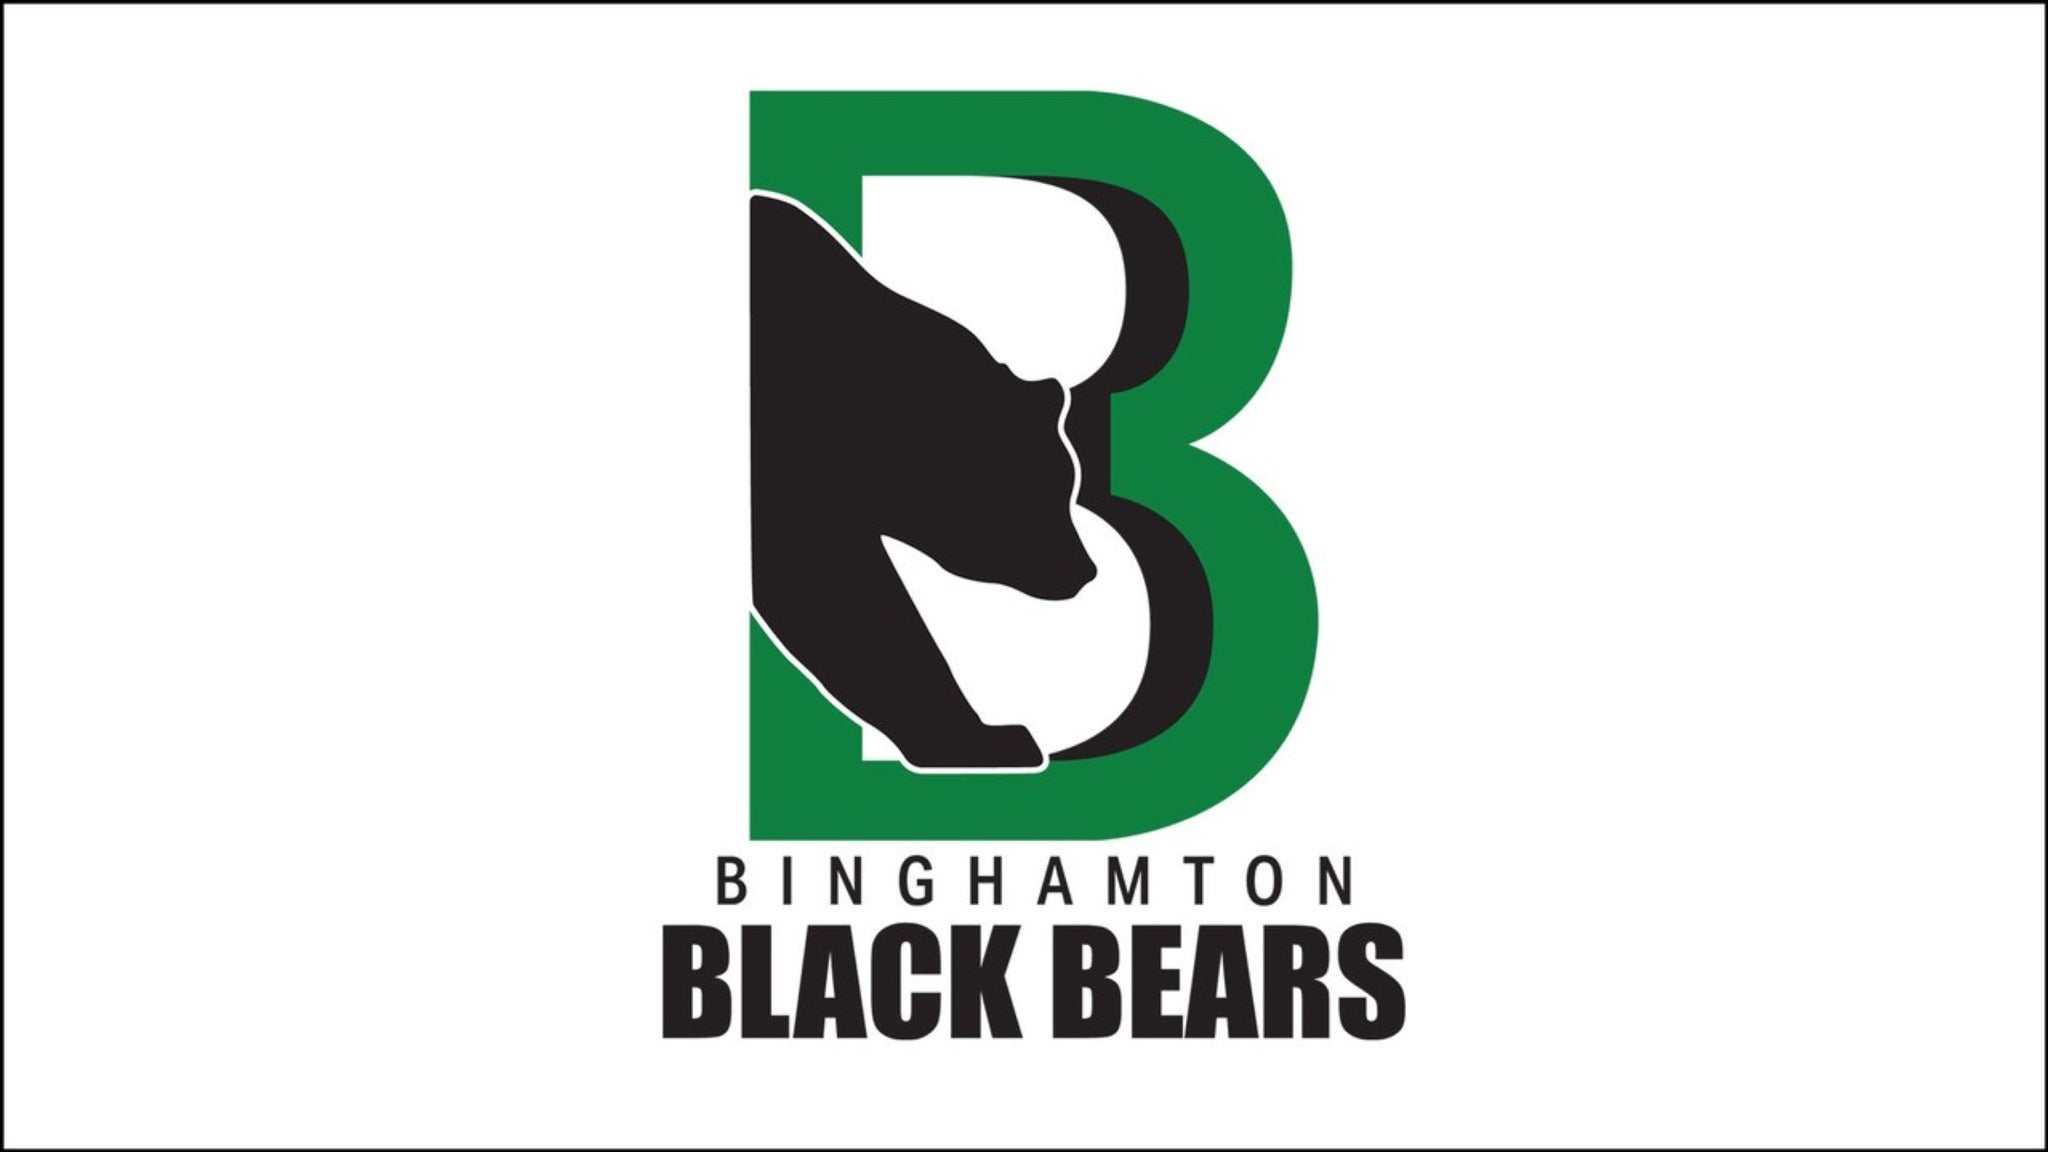 Binghamton Black Bears vs. Delaware Thunder